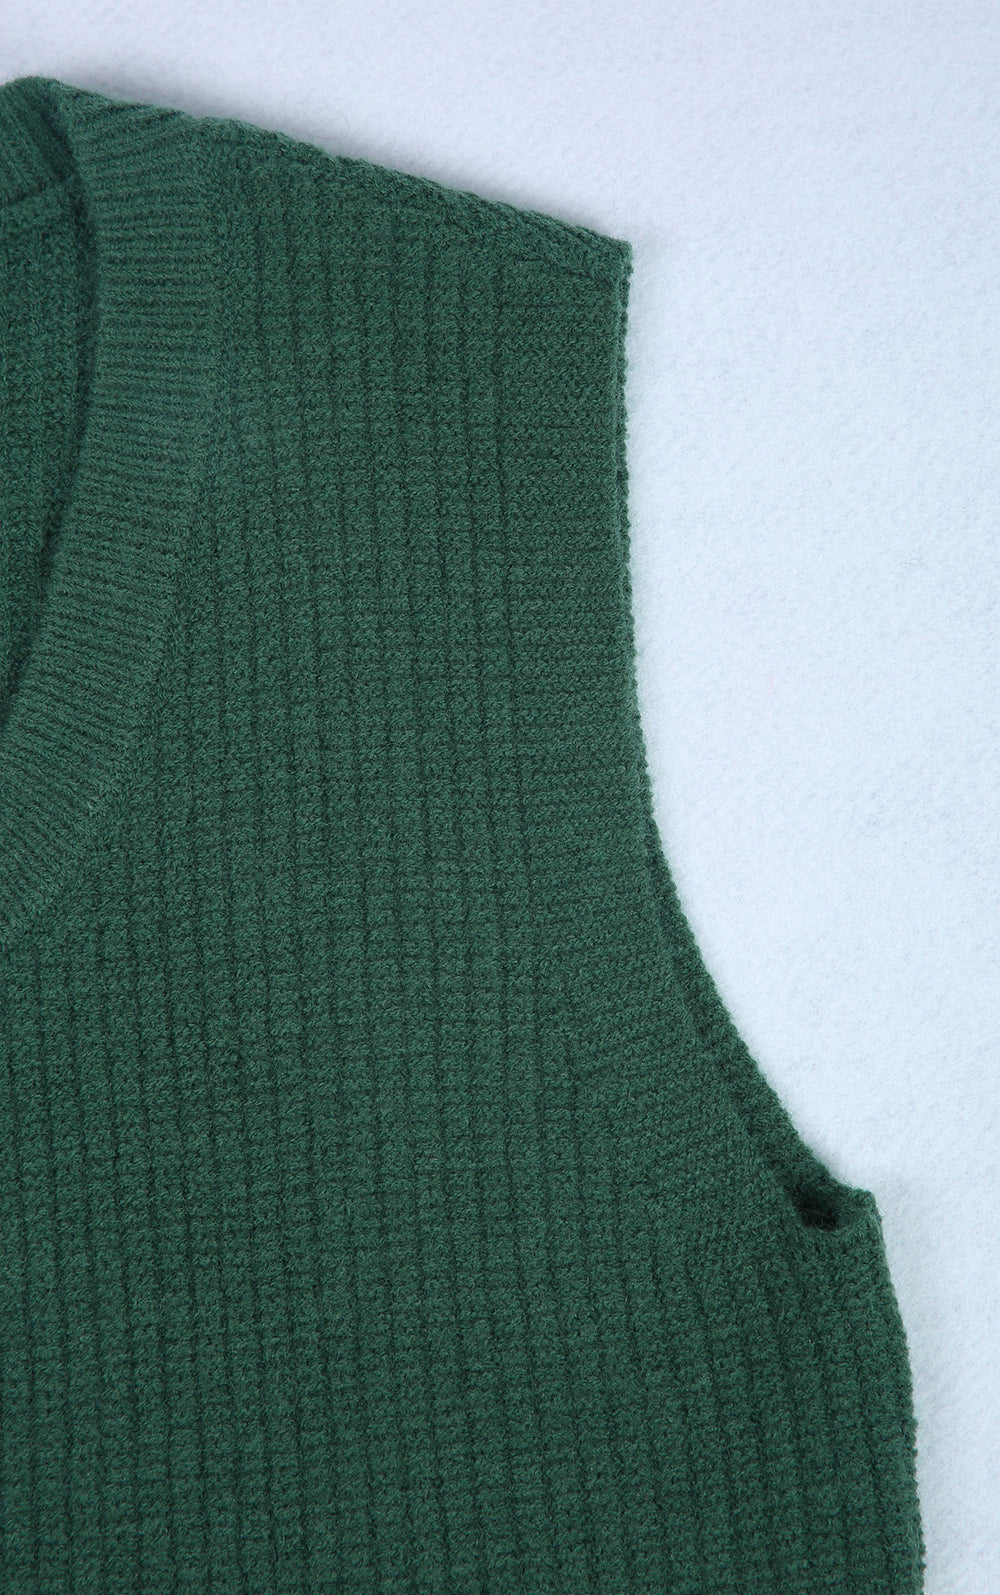 Green Sleeveless Plain Sweater Vest